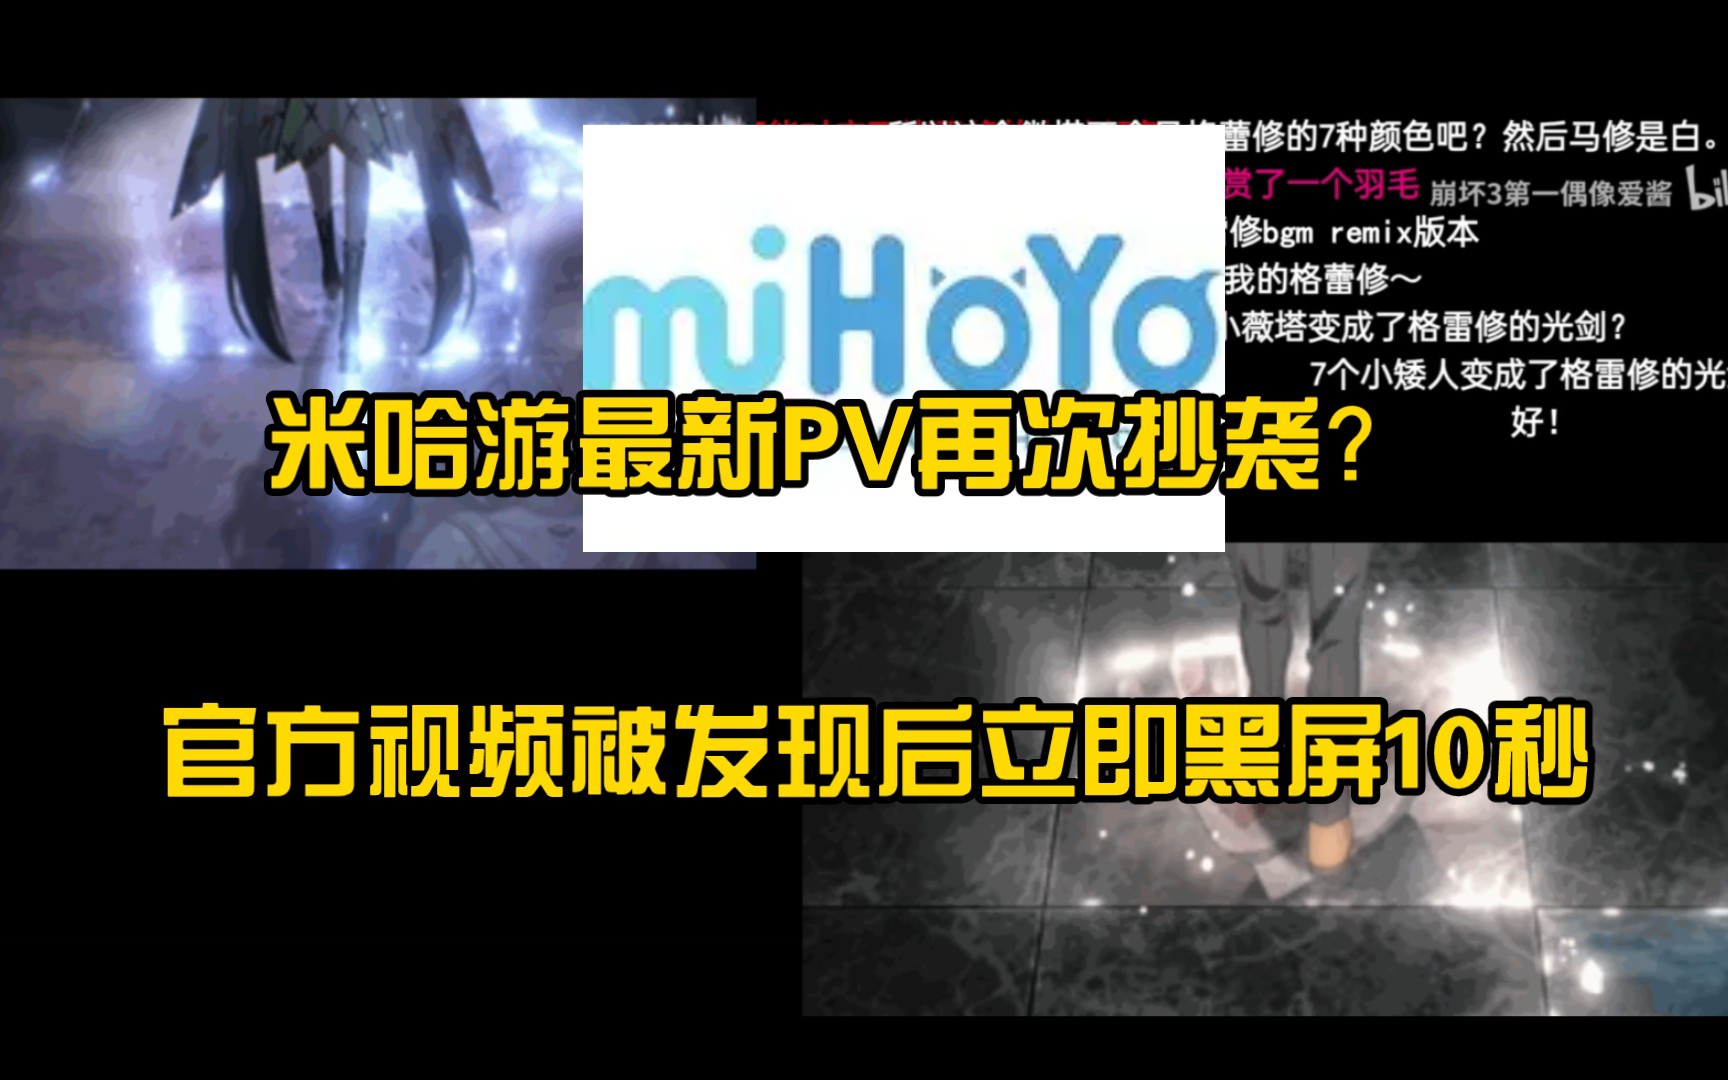 米哈游最新PV抄袭《葬送的芙莉莲》等多部作品片段对比，官方视频修改为黑屏